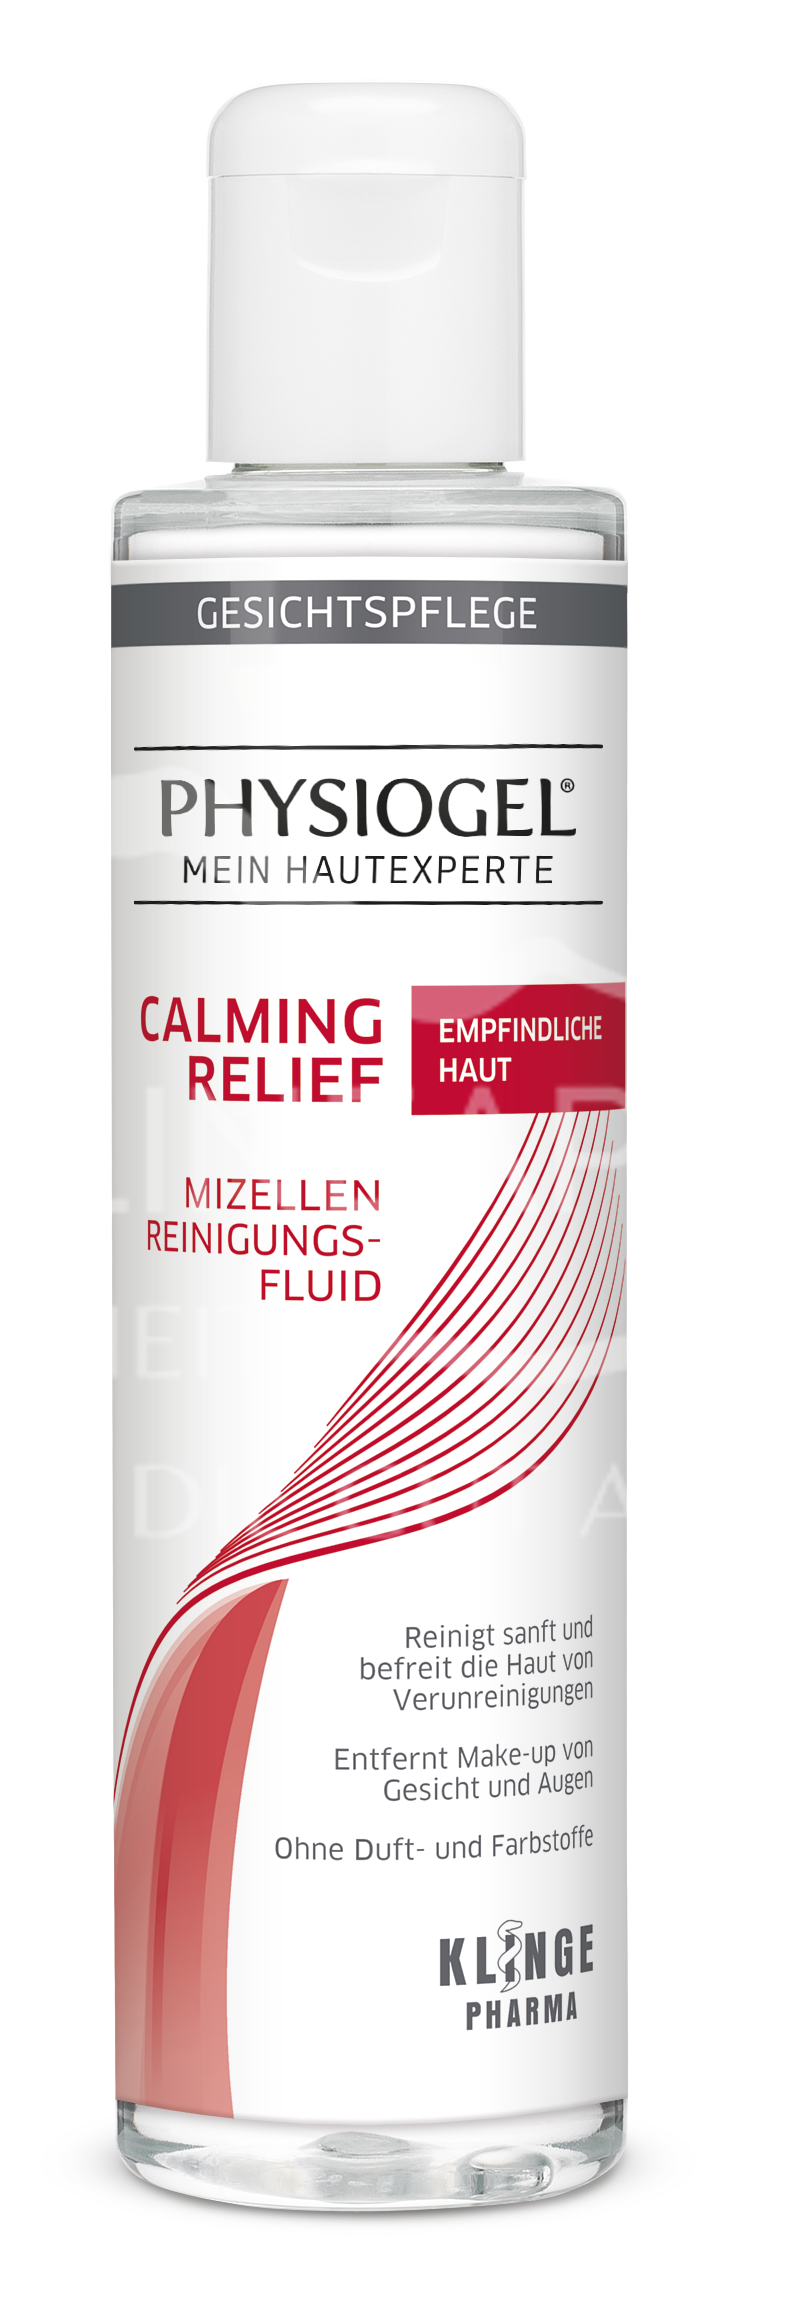 Physiogel® Calming Relief Mizellen Reinigungsfluid - Empfindliche Haut